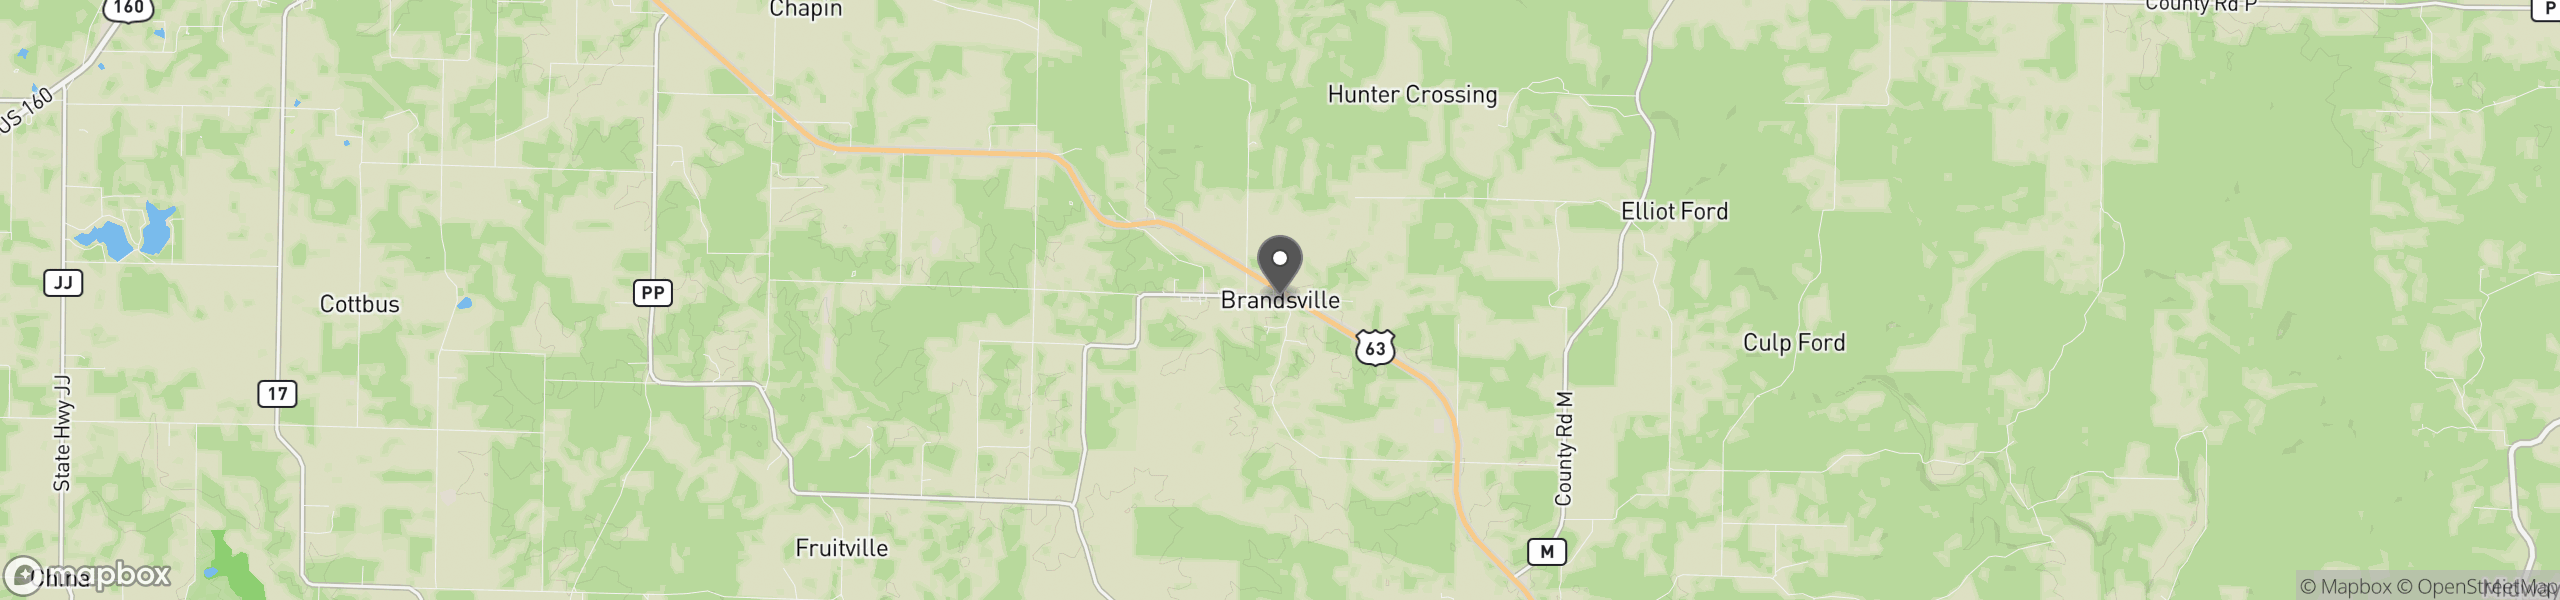 Brandsville, MO 65688